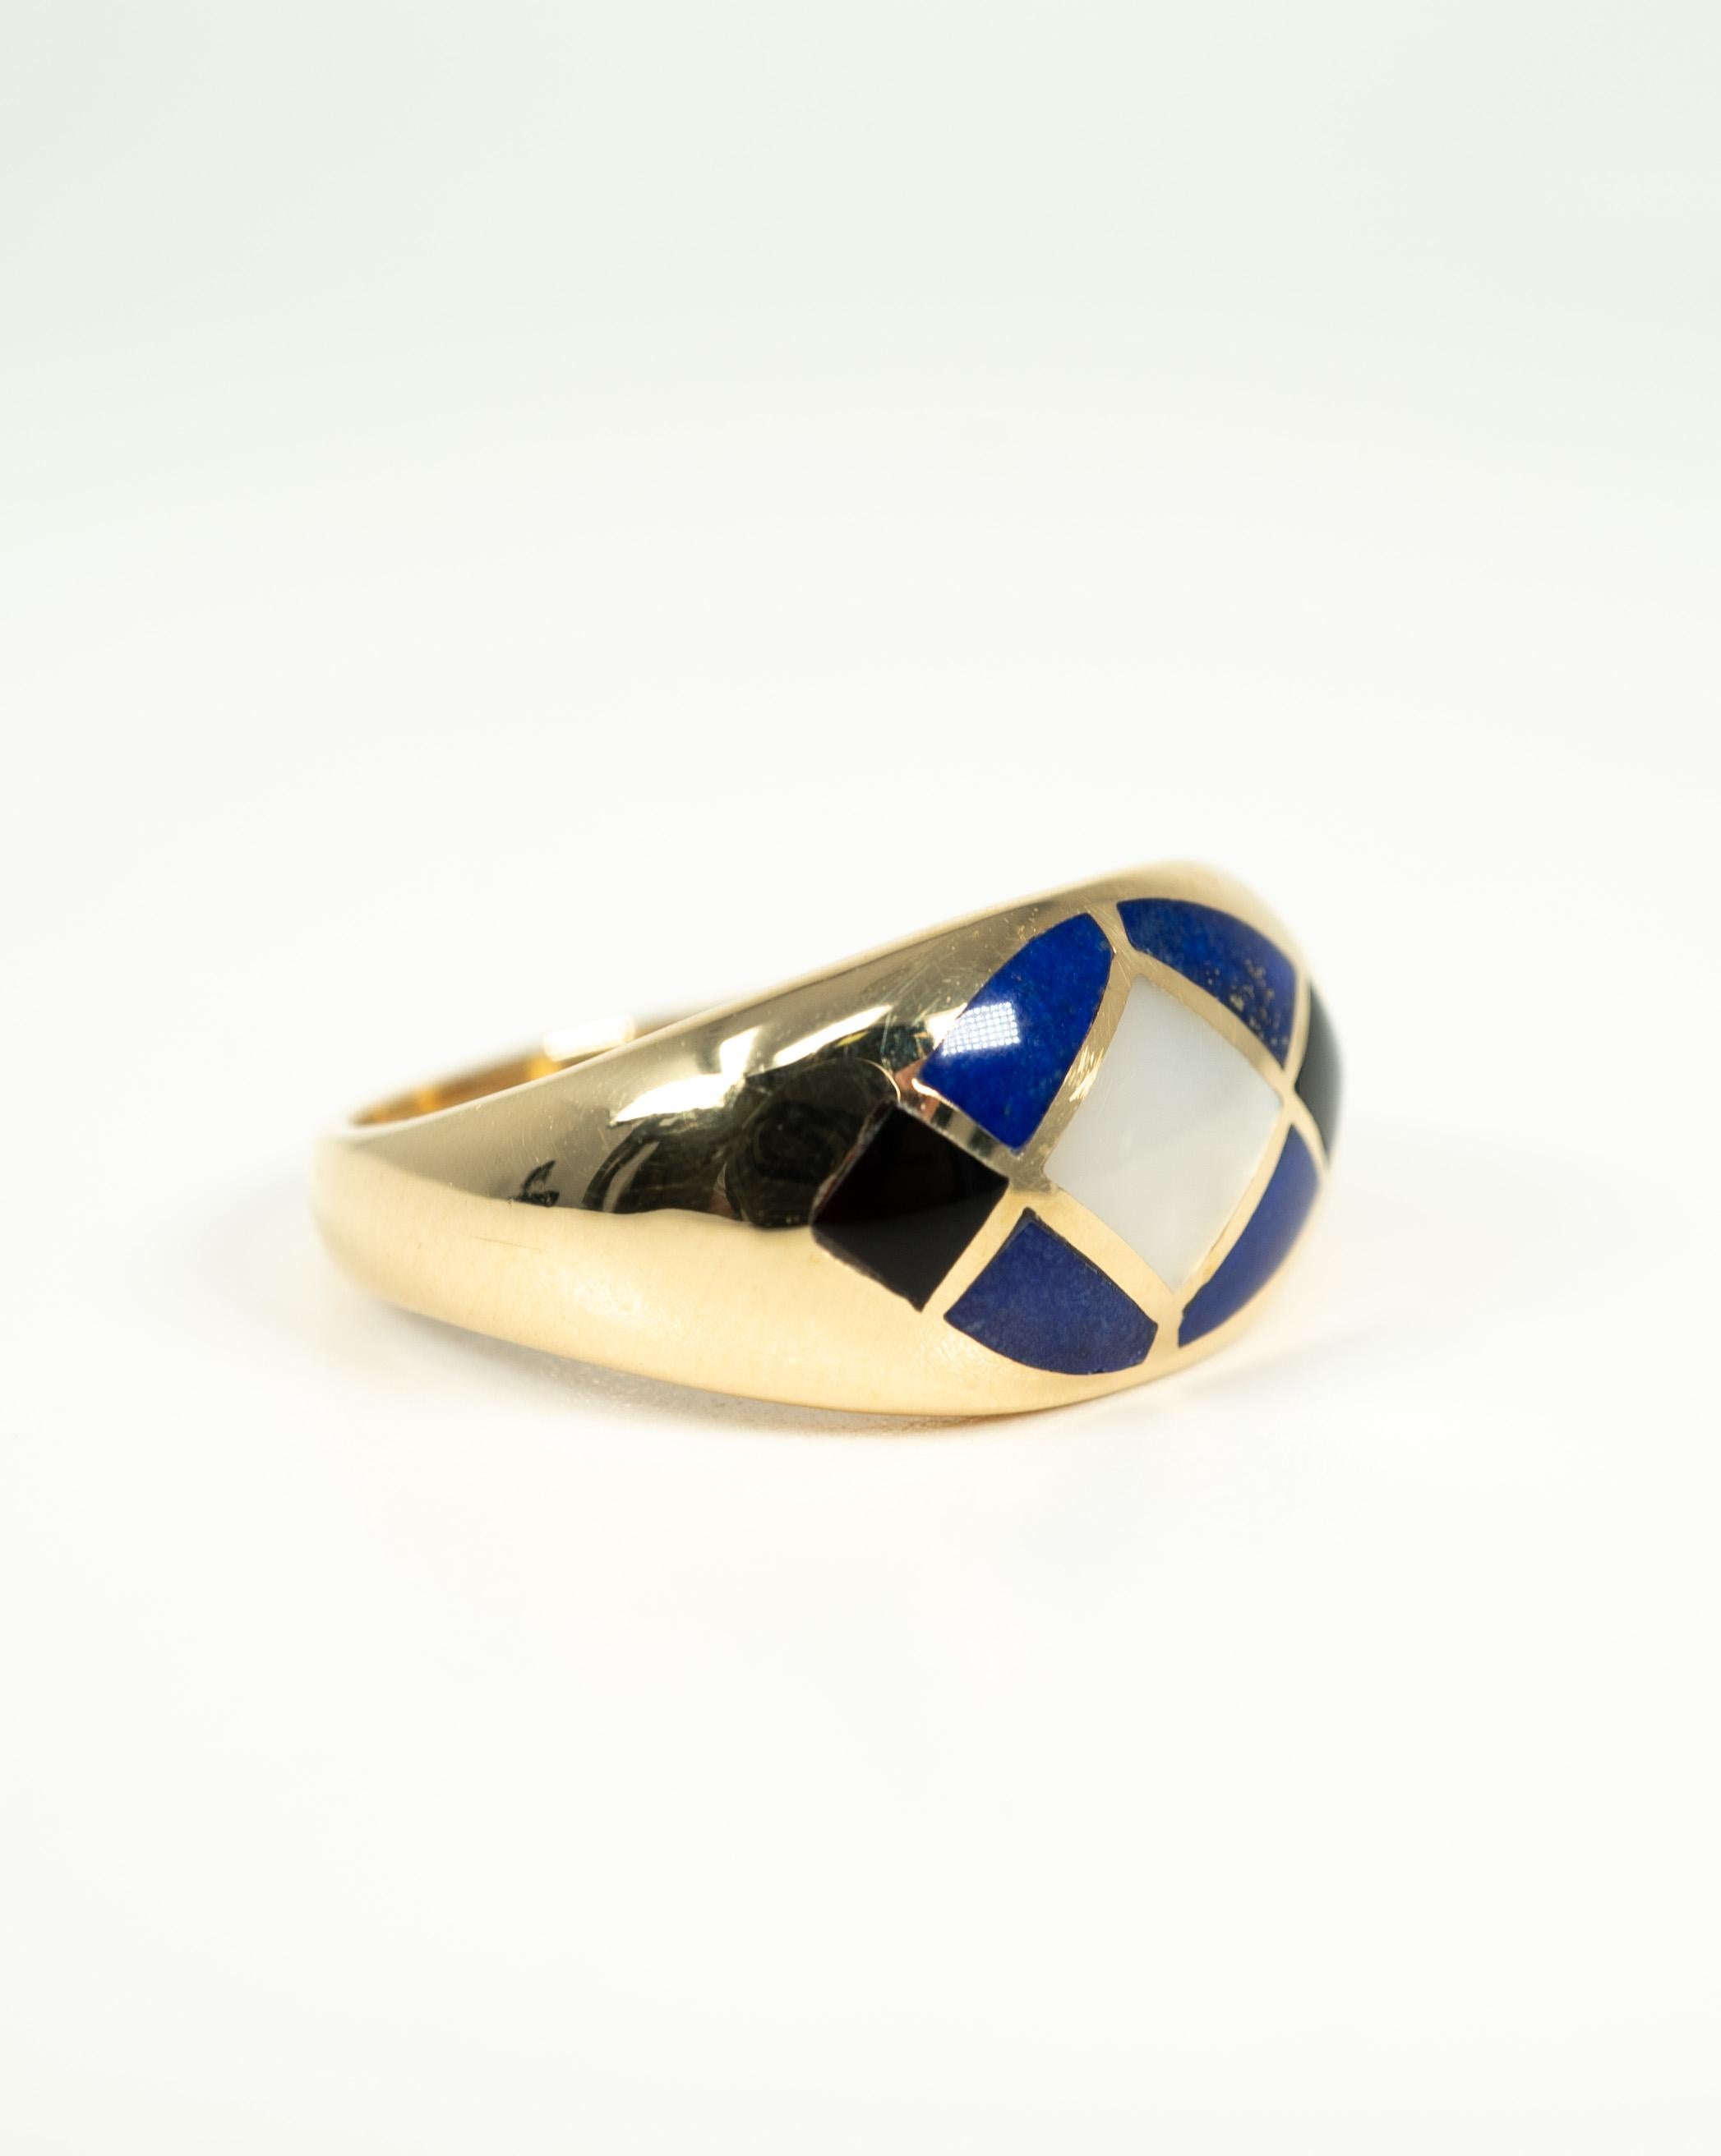 Dieser Ring aus 14-karätigem Gelbgold verfügt über wunderschöne Intarsien aus Perlmutt, Lapislazuli und Onyx!